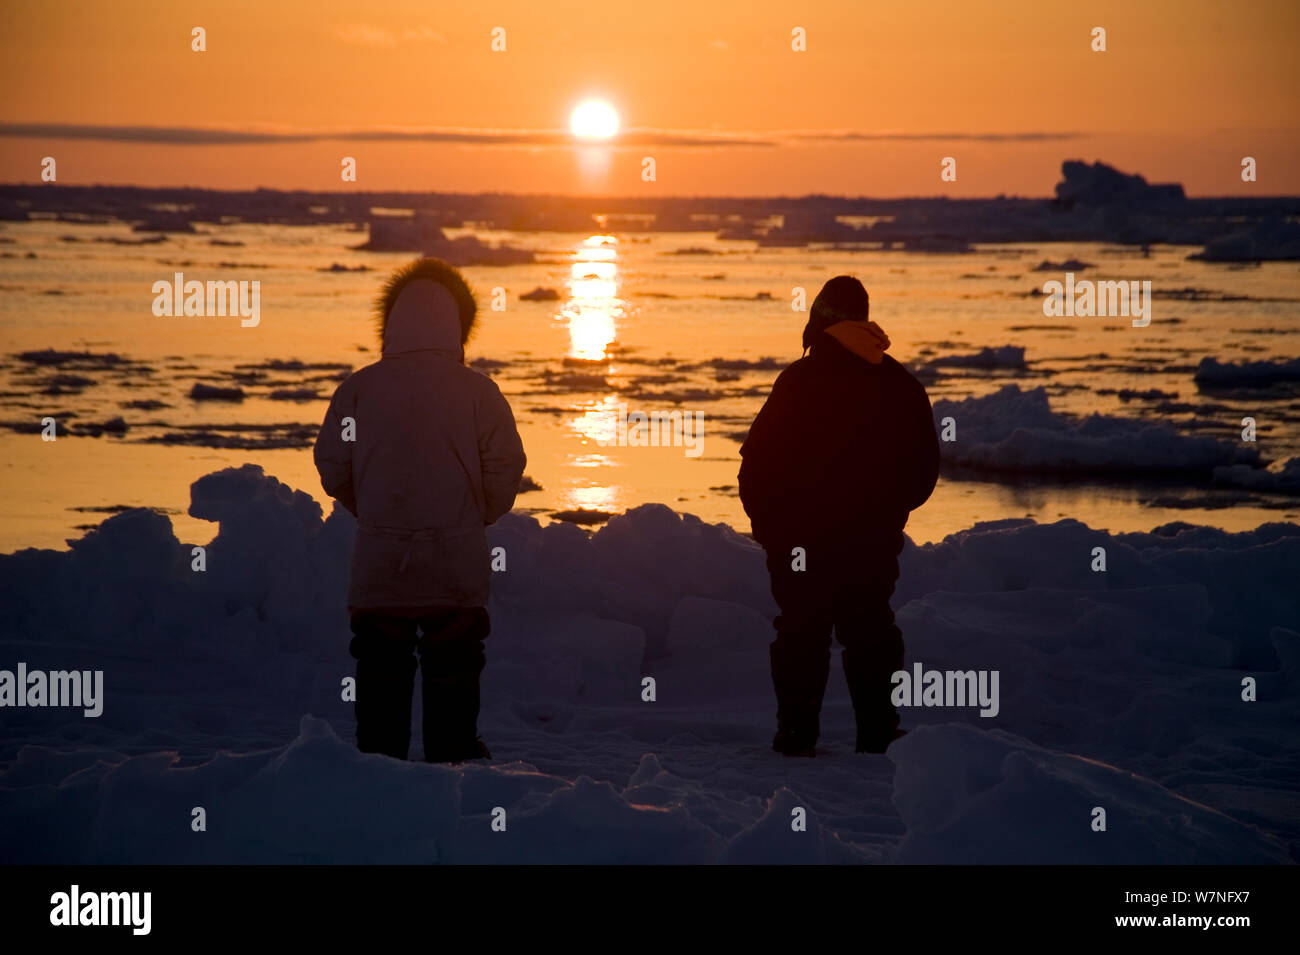 Silhouette der Inupiaq Aufenthaltskosten walfänger am Rande einer Leitungsunterbrechung im Packeis, suchen die bowhead Wale Mitte der Sonne folgt den Horizont. Chukchi Sea, offshore von Barrow, arktischen Küste von Alaska, Mai 2012. Stockfoto